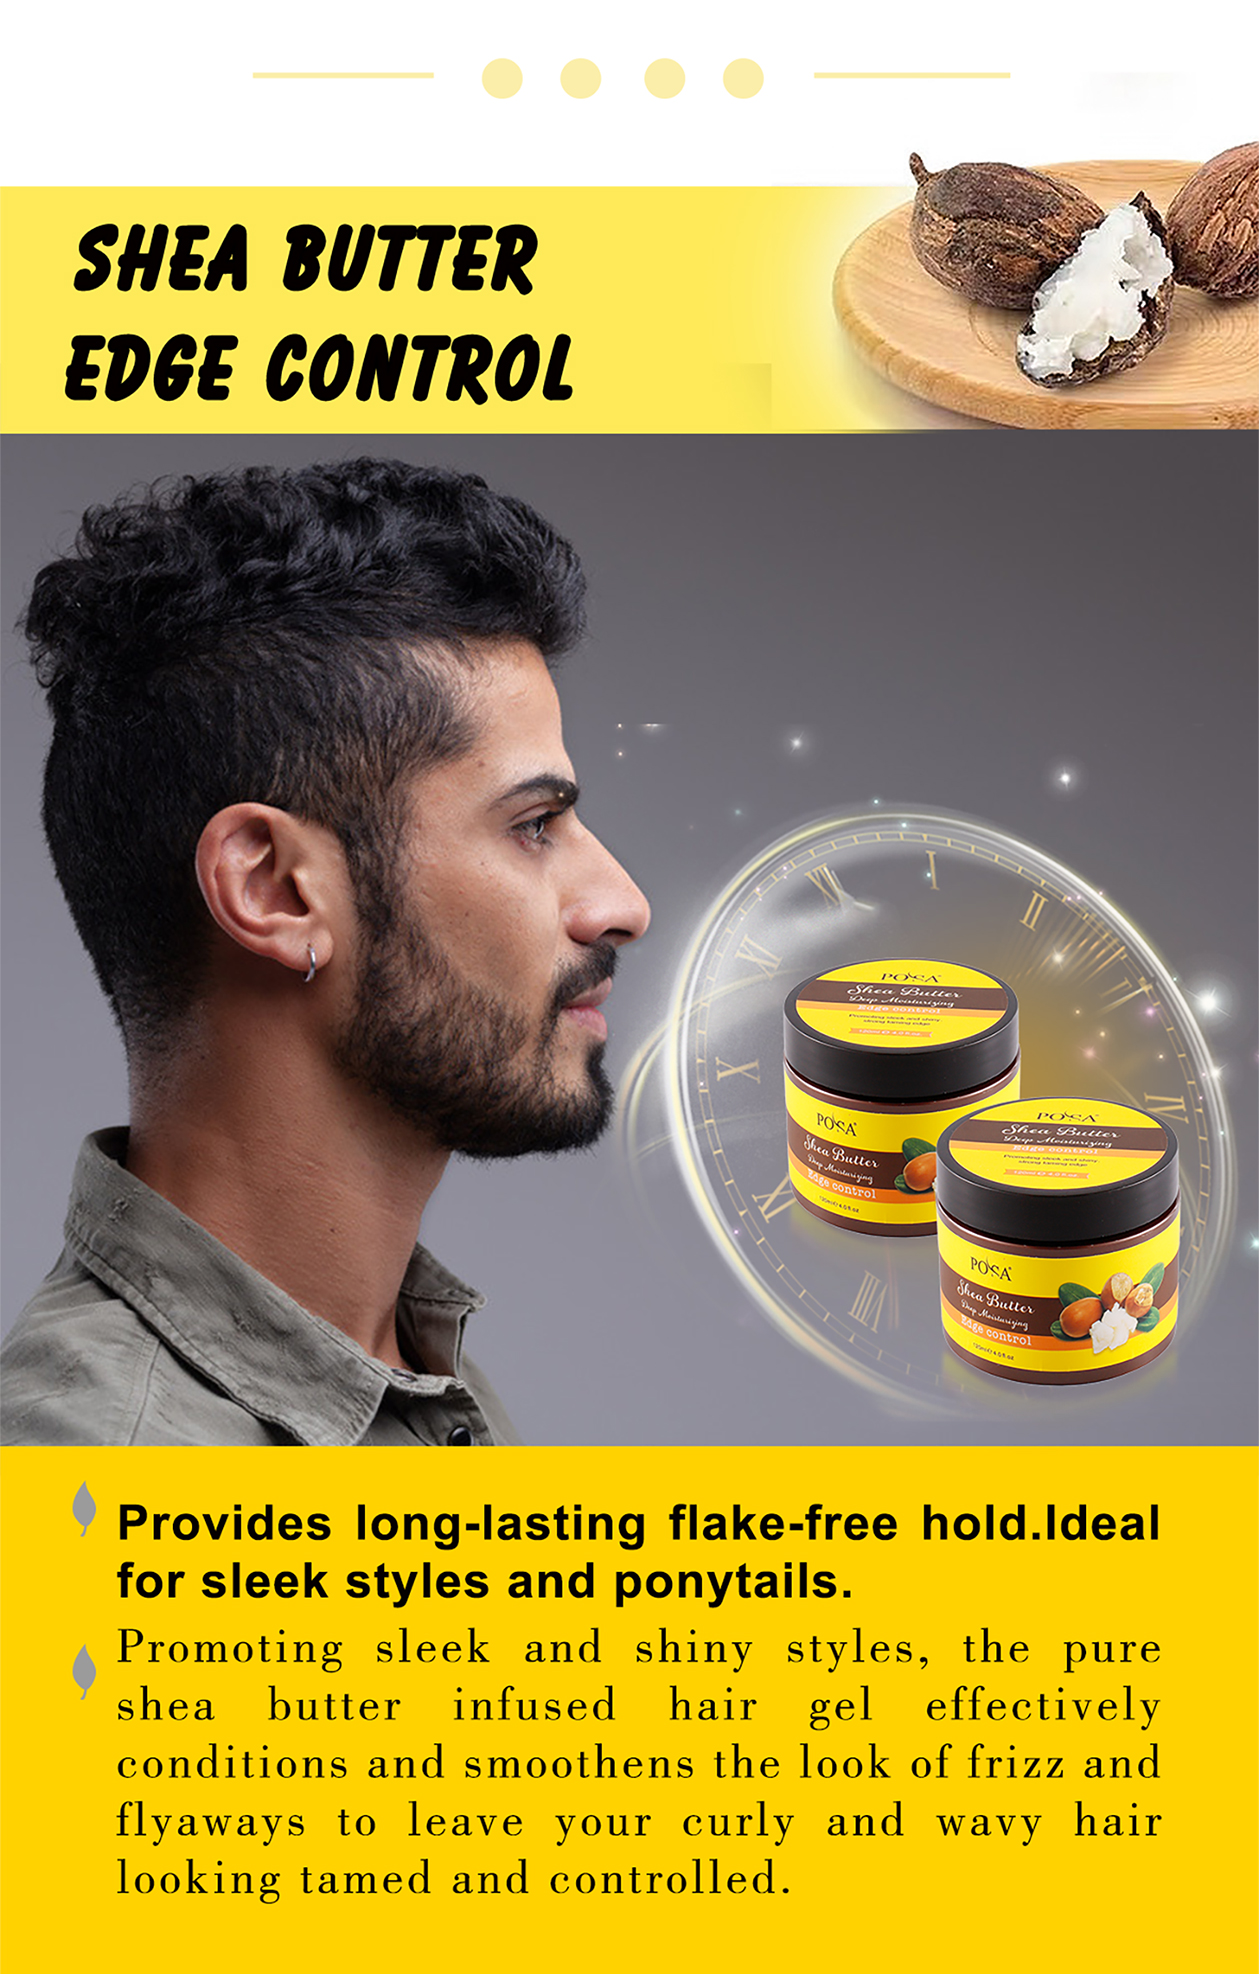 POSA masło shea kontrola krawędzi włosów woskowanie pielęgnacja włosów mocne utrwalenie lśniący wygląd